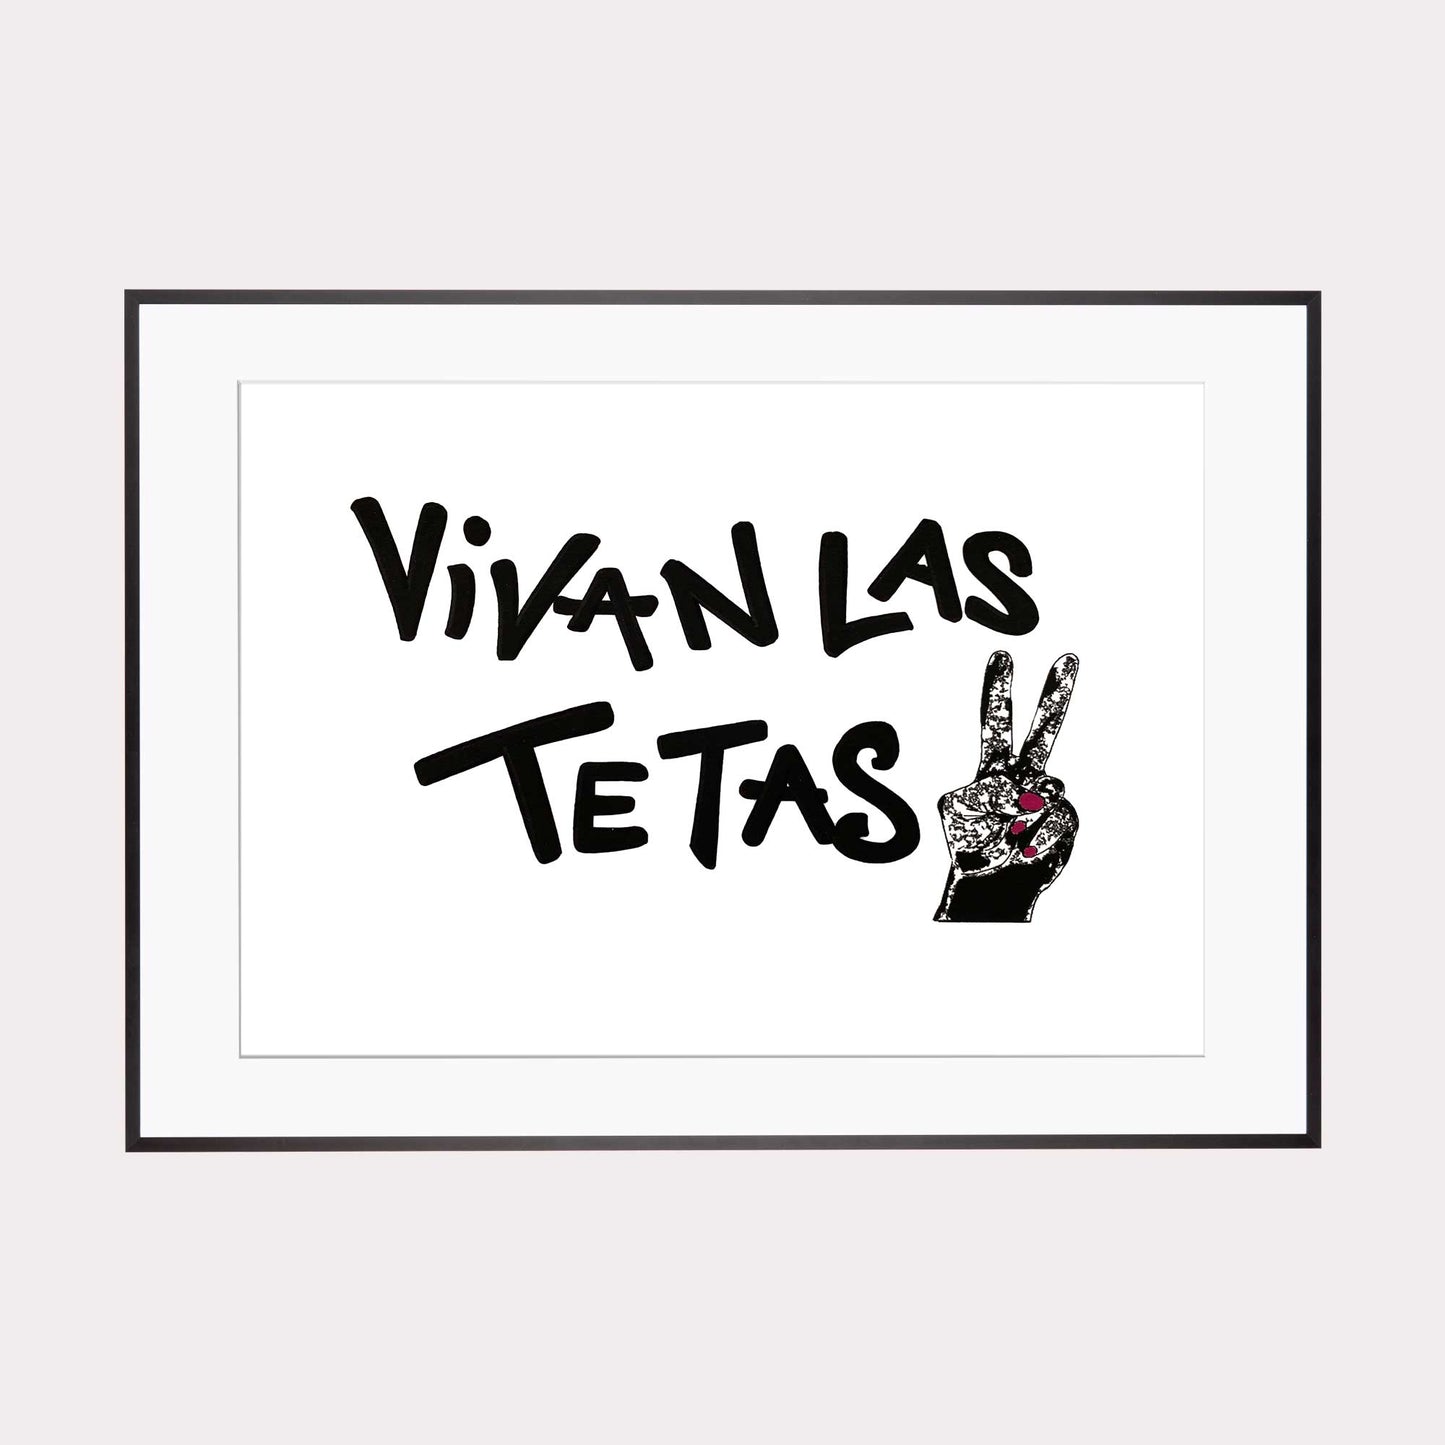 Art Print | vivan las tetas VICTORY